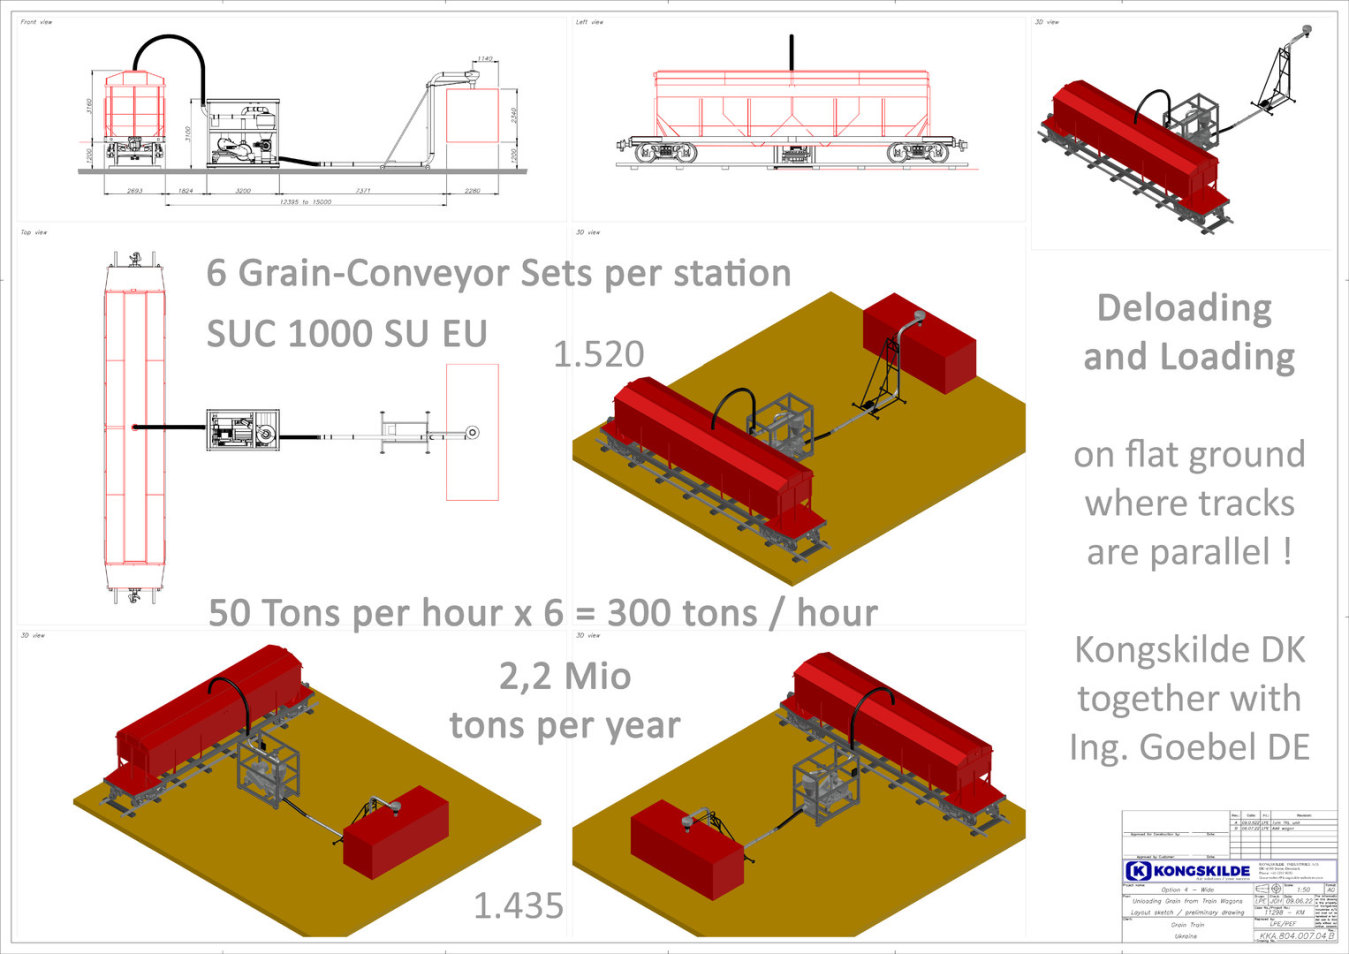 Kongskilde Deloading-Loading Grain-Conveyor Set for Grain-Trains-Ukraine